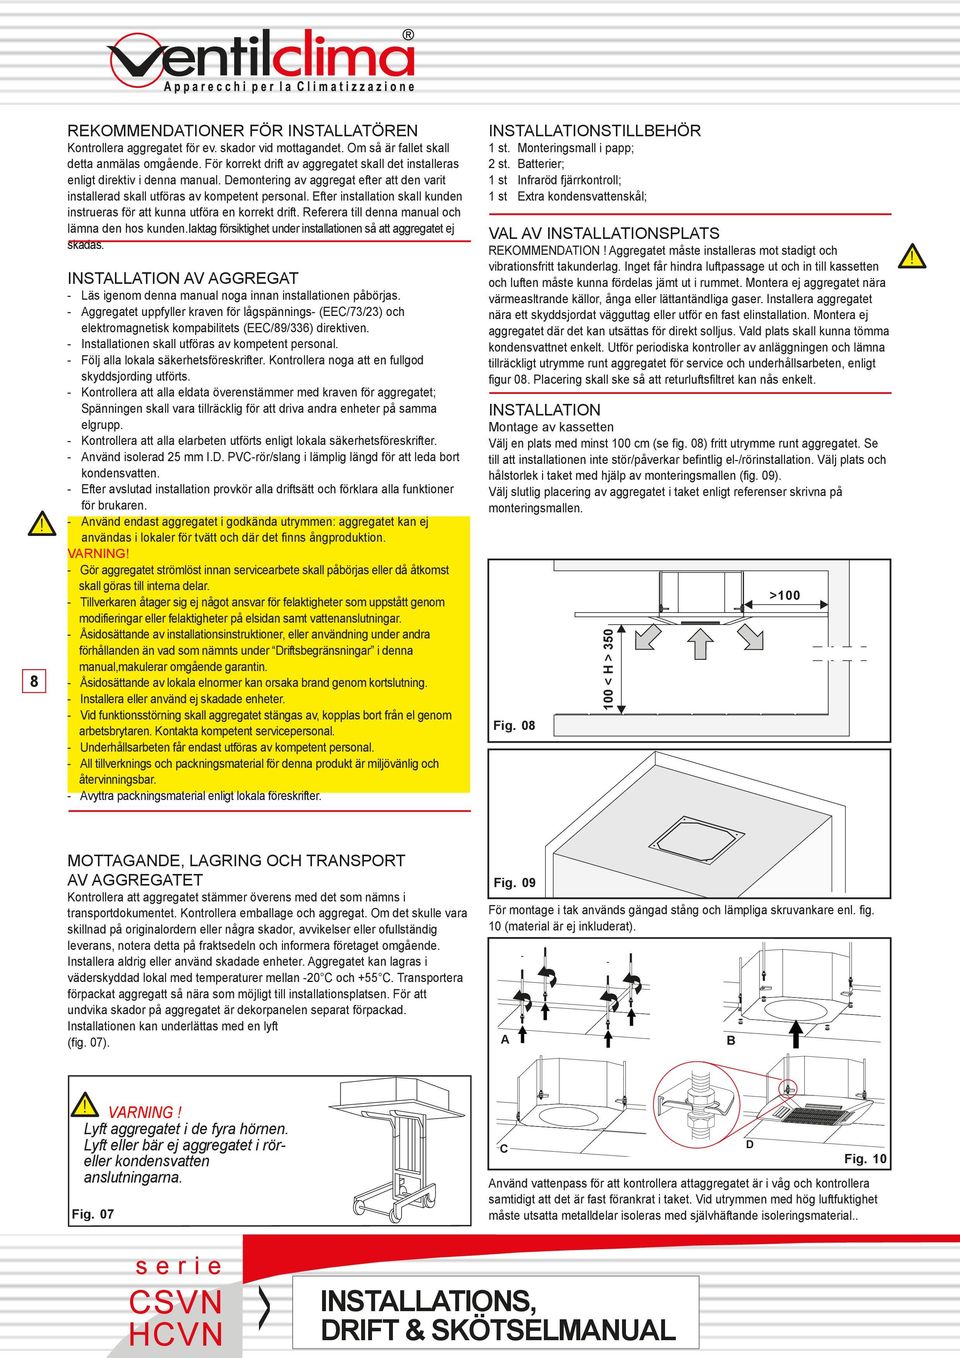 Referera till denna manual och lämna den hos kunden.iaktag försiktighet under installationen så att aggregatet ej skadas.